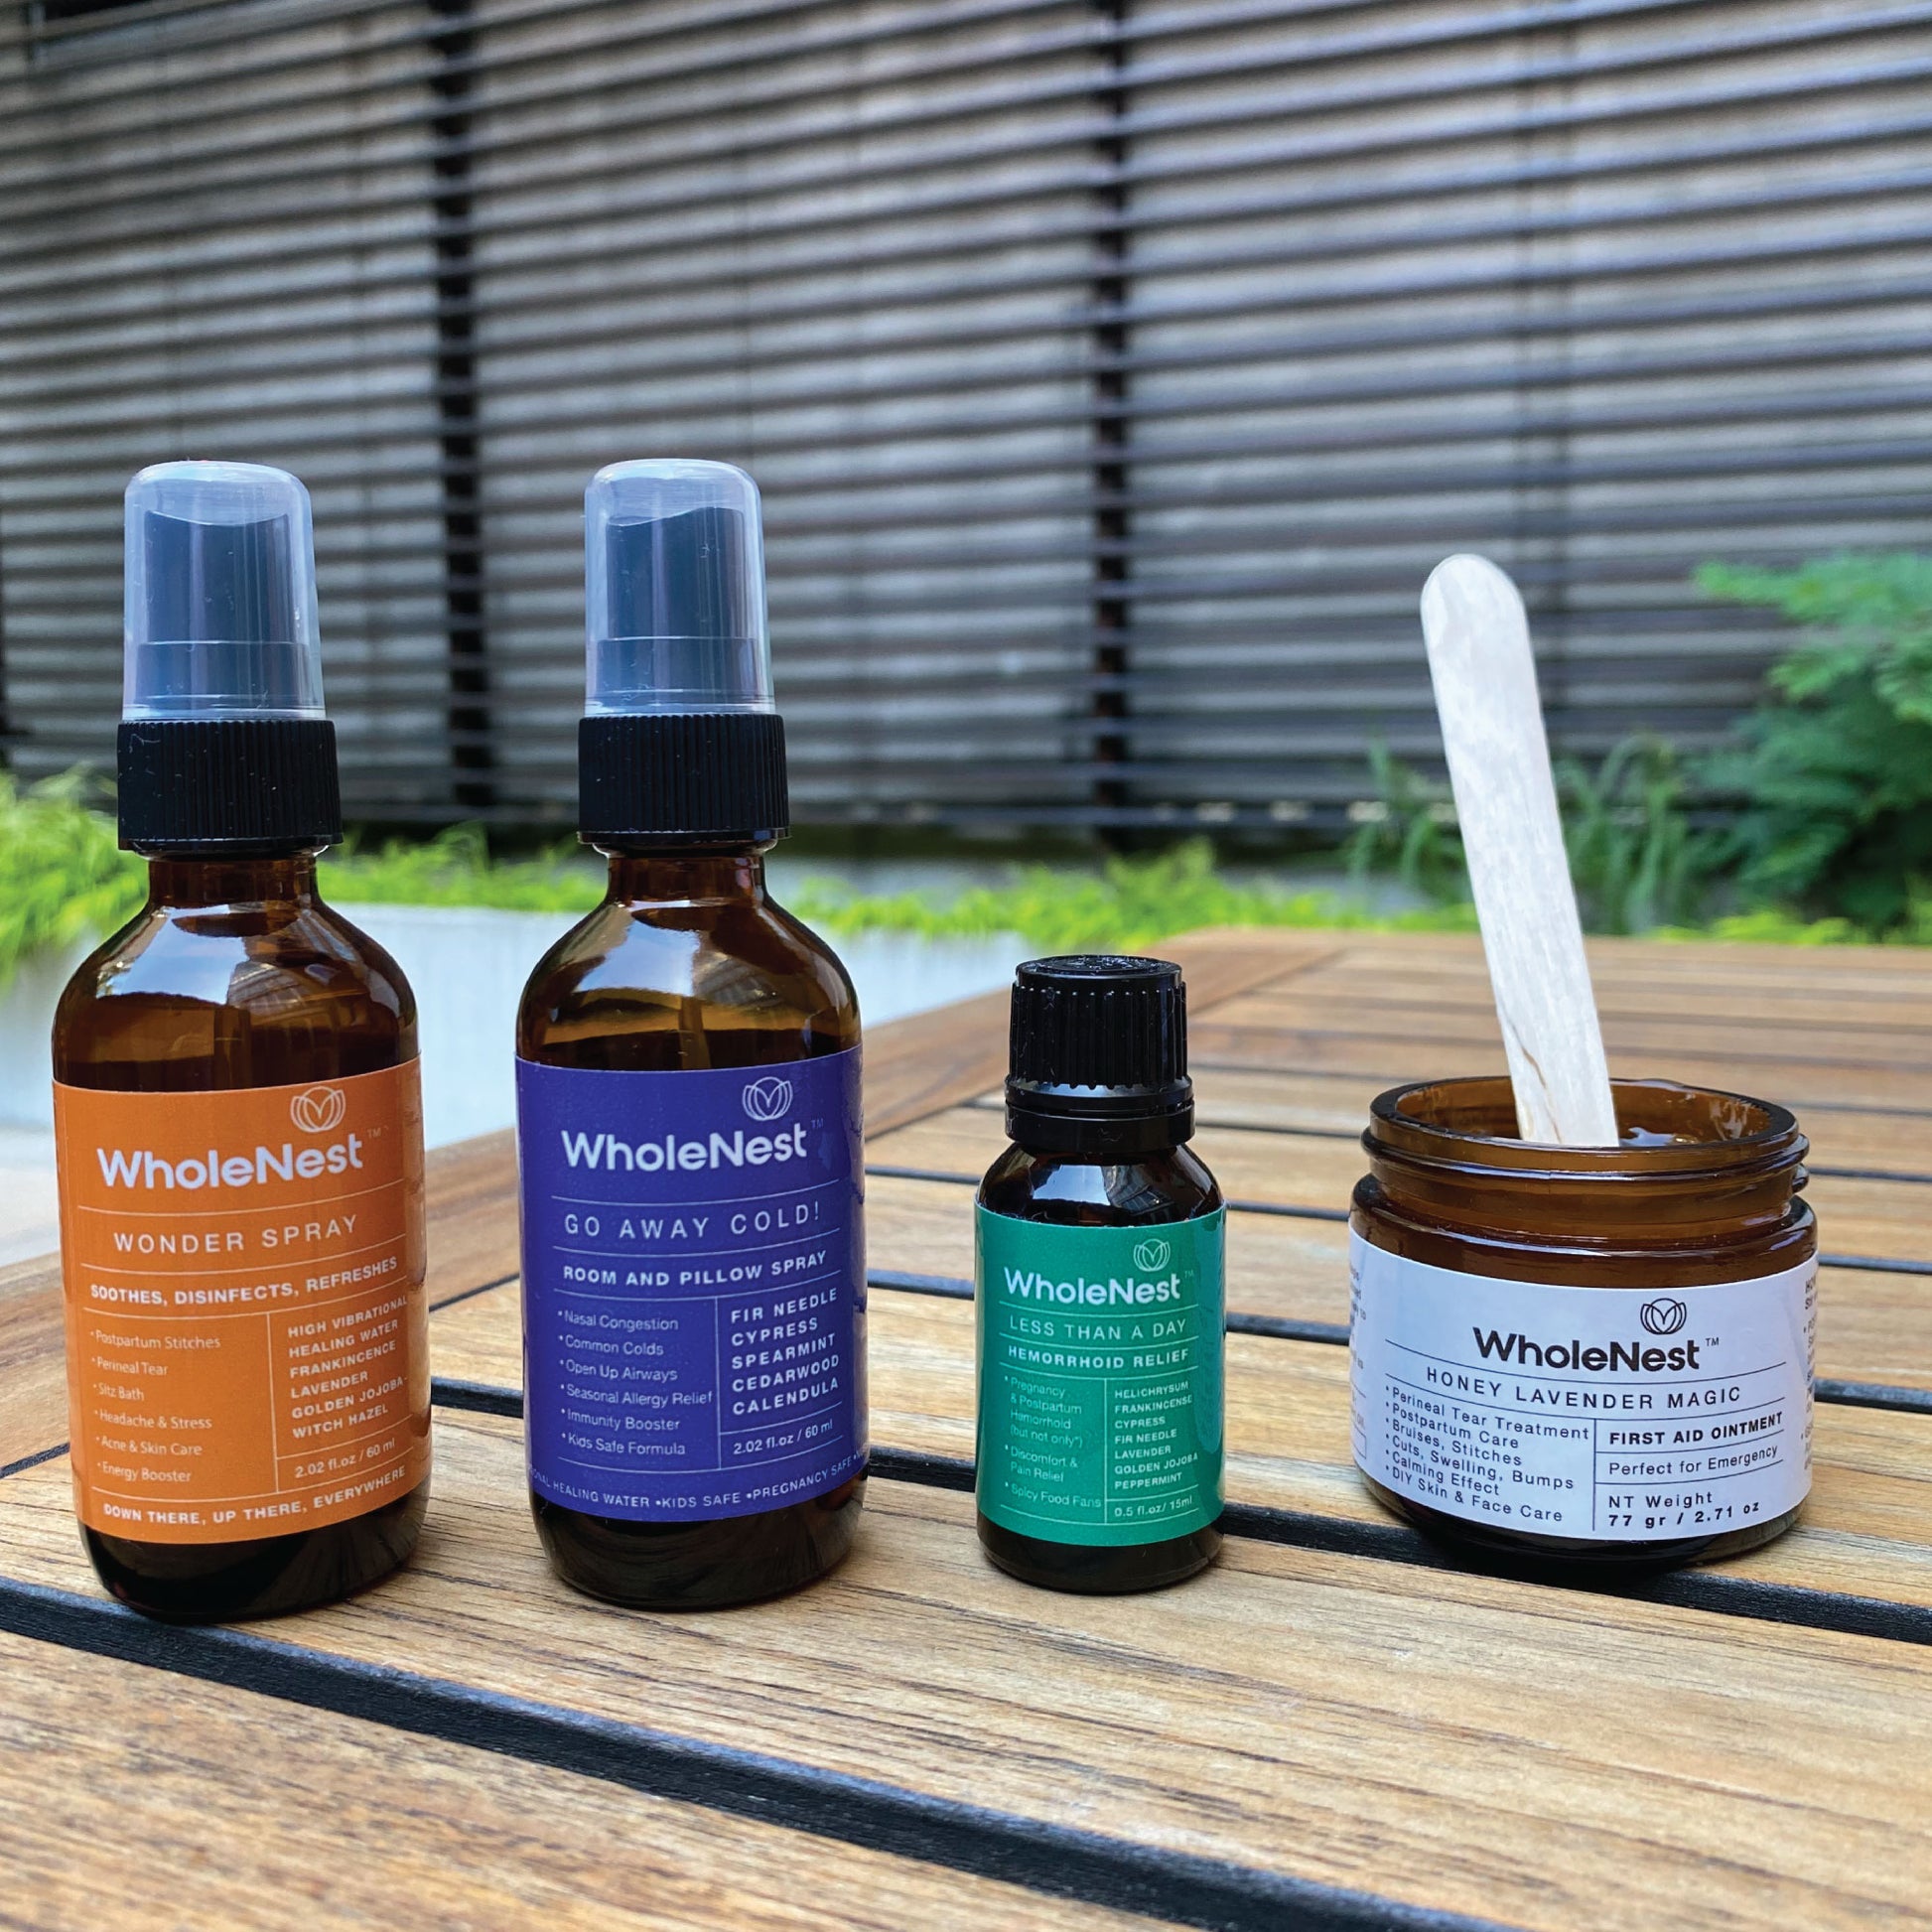 WholeNest Postpartum Essentials - Honey Lavender Magic Perineal